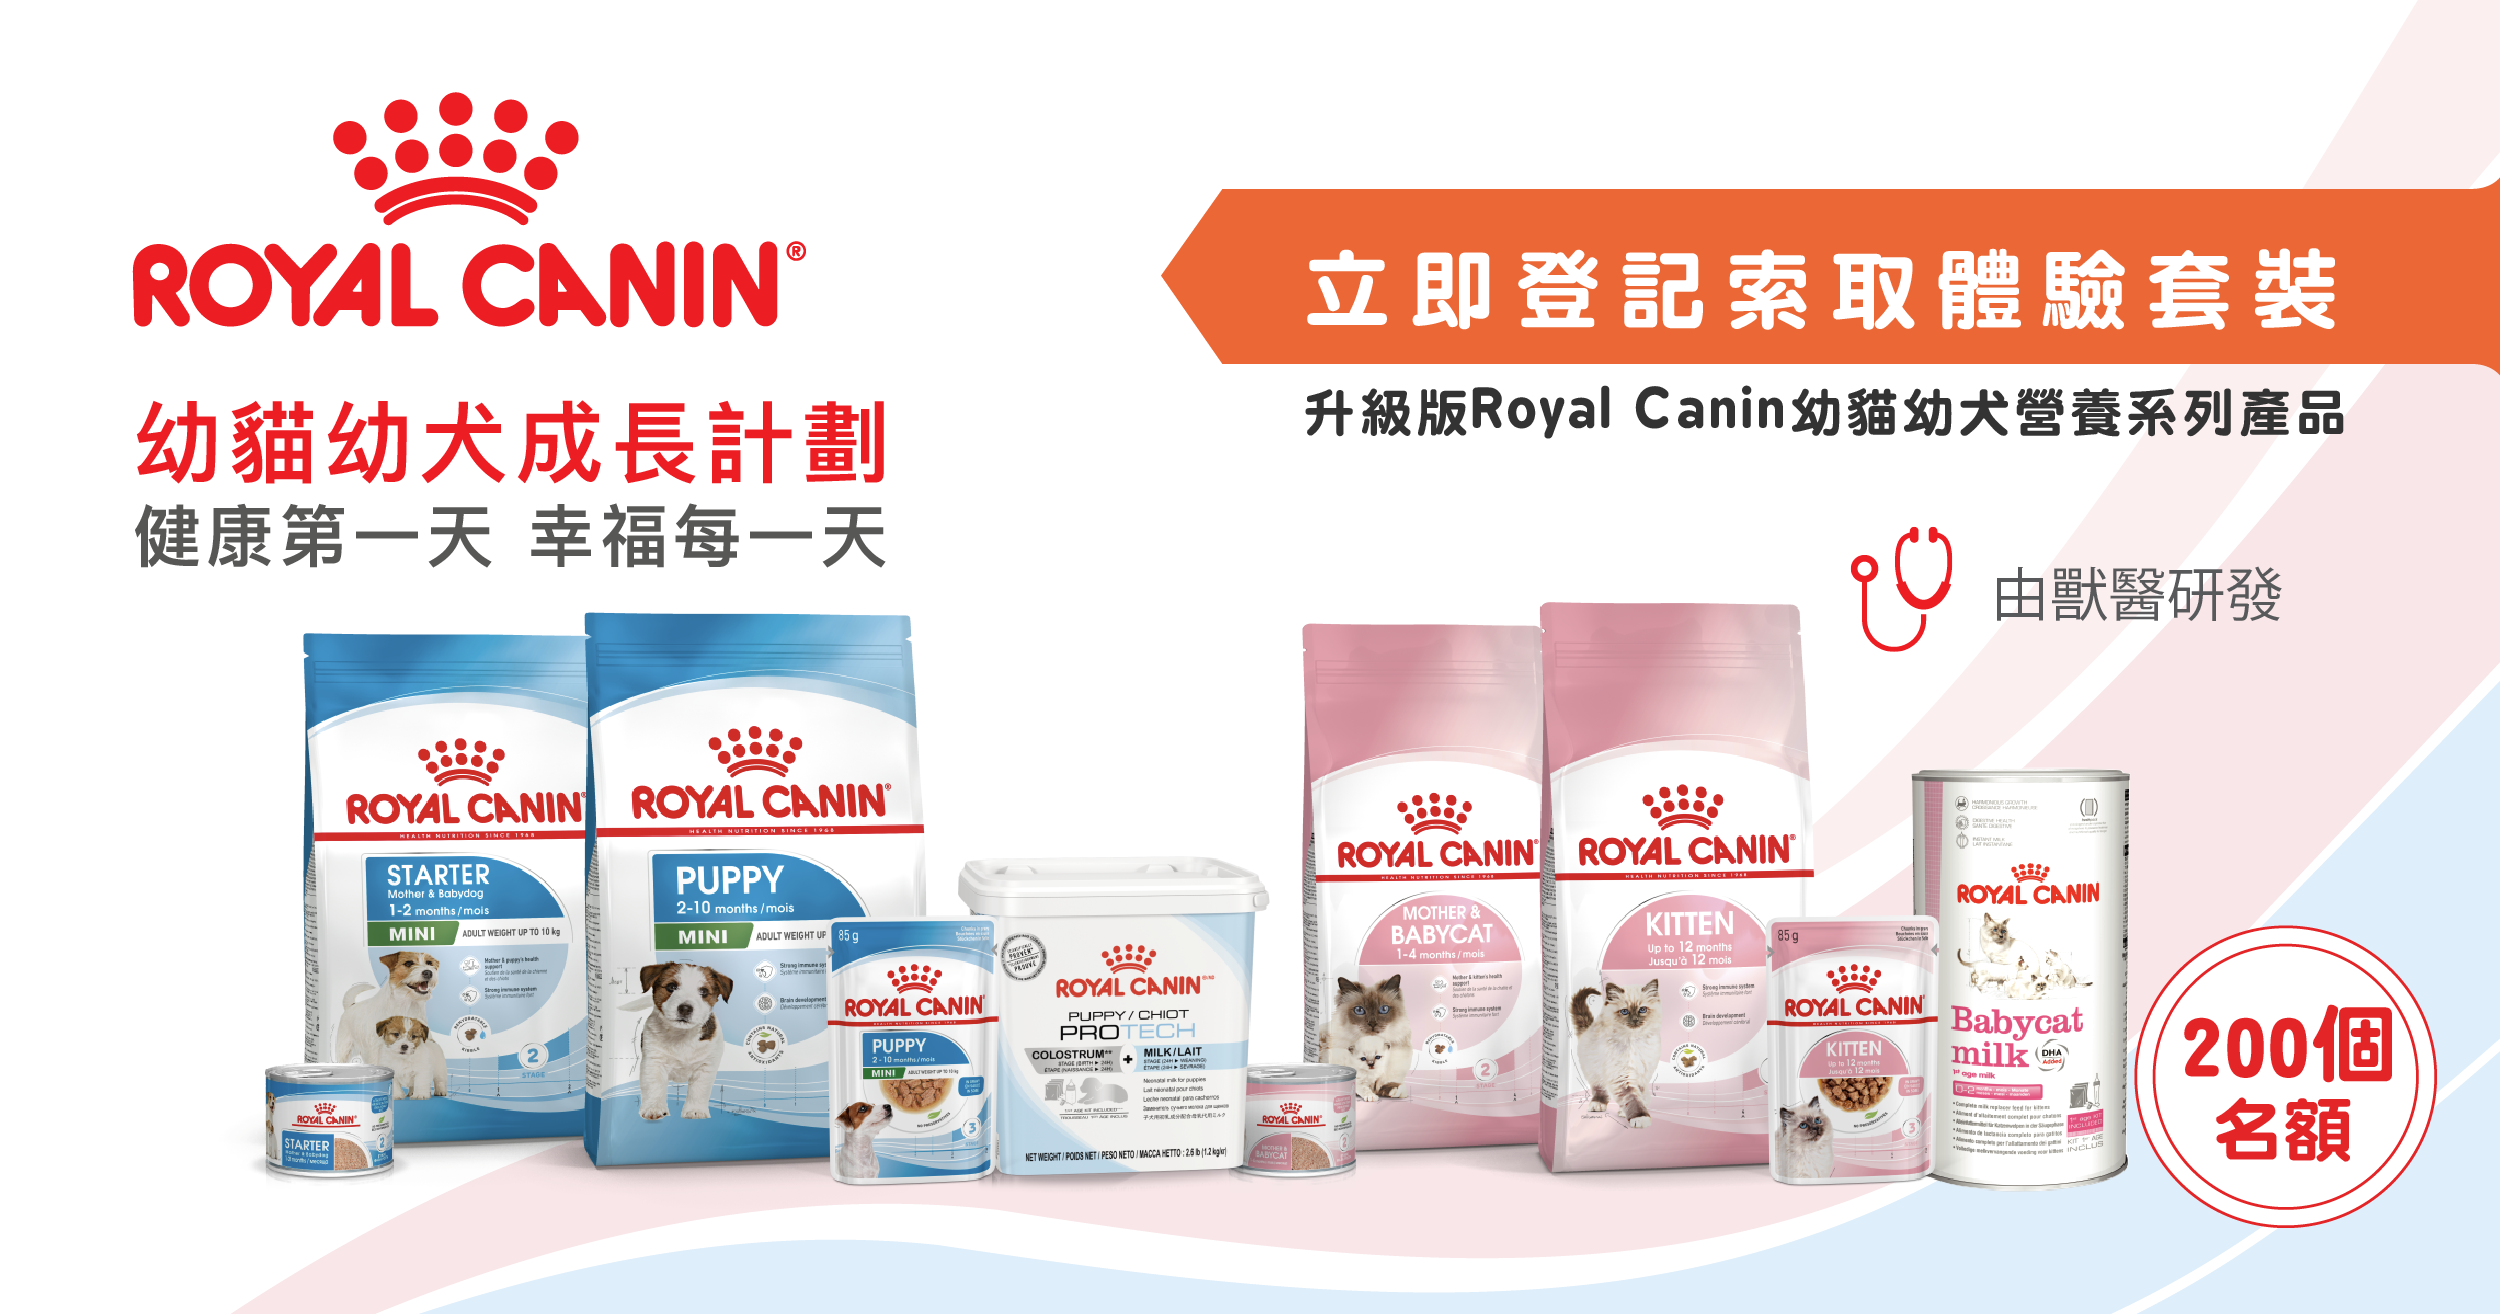 索取Royal Canin幼犬幼貓食糧產品體驗裝參加表格